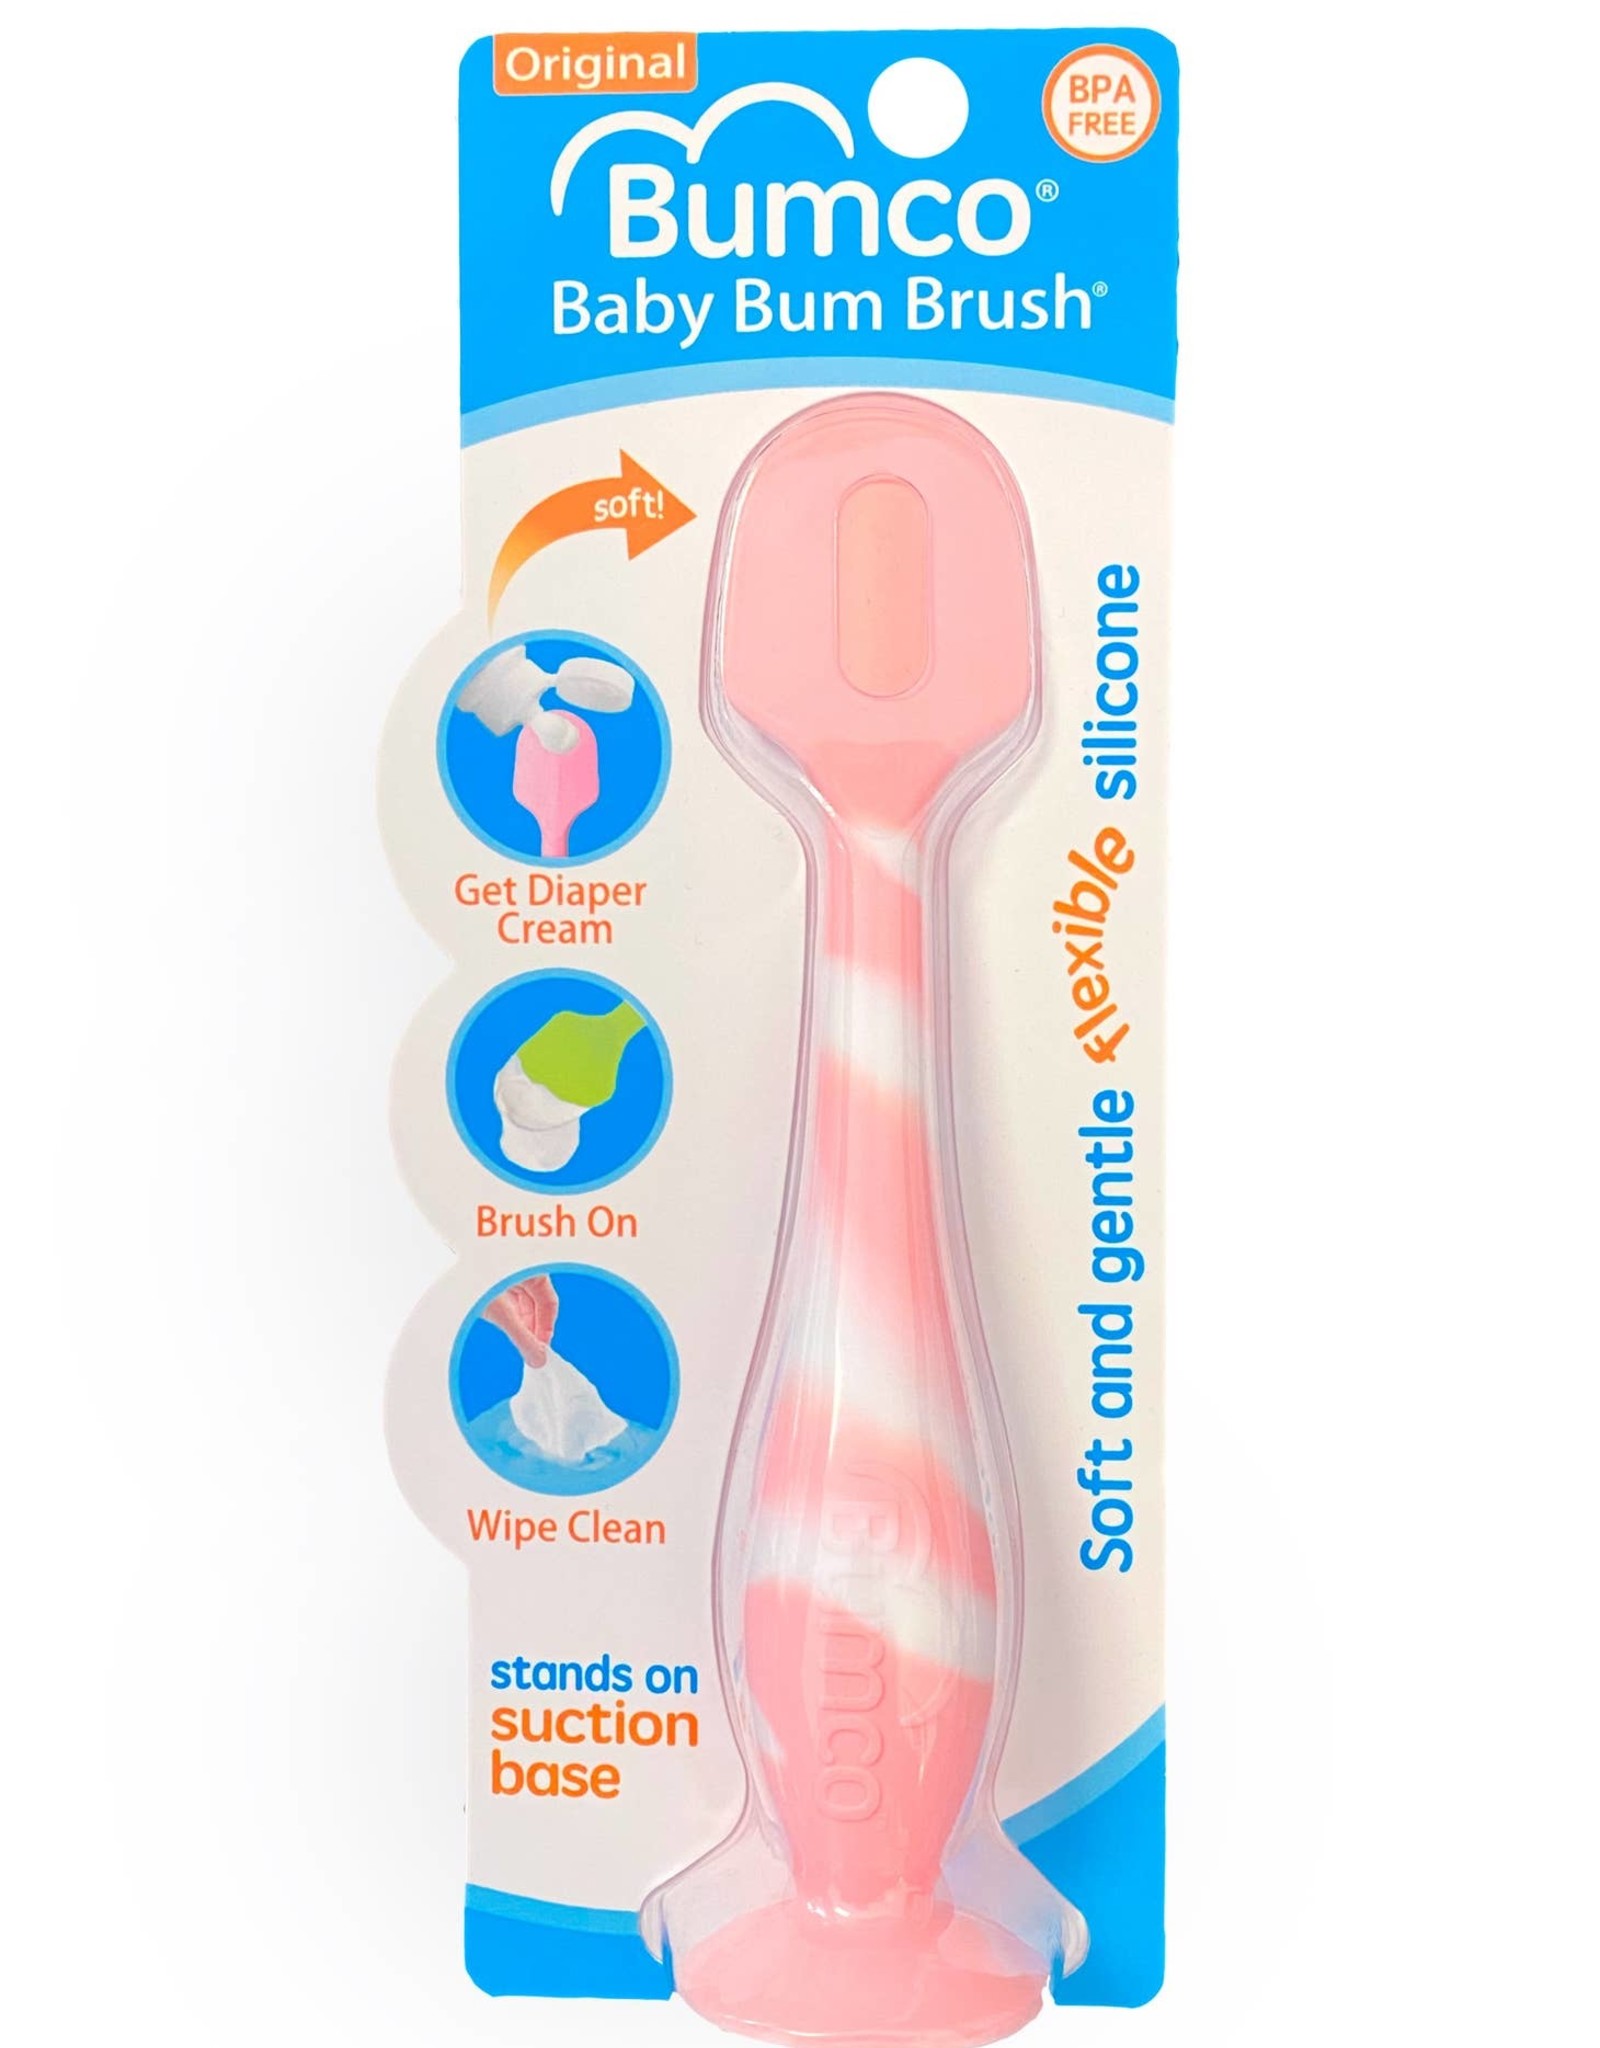 Baby Bum Brush